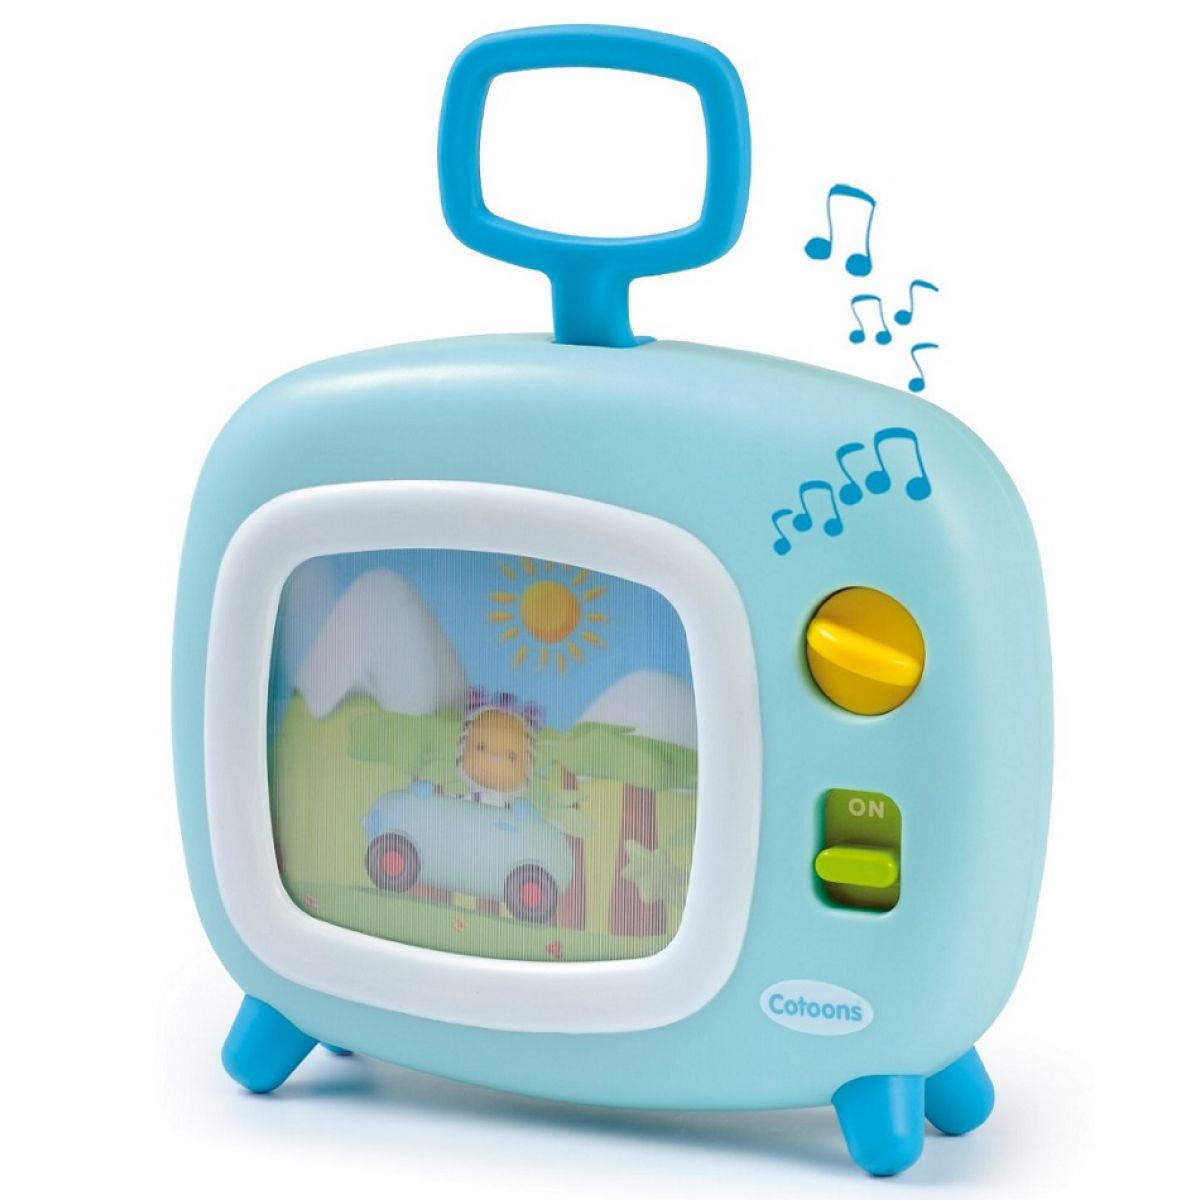 Smoby 211316 svetlomodrá farebný televízor Cotoons s hudbou pre kojencov